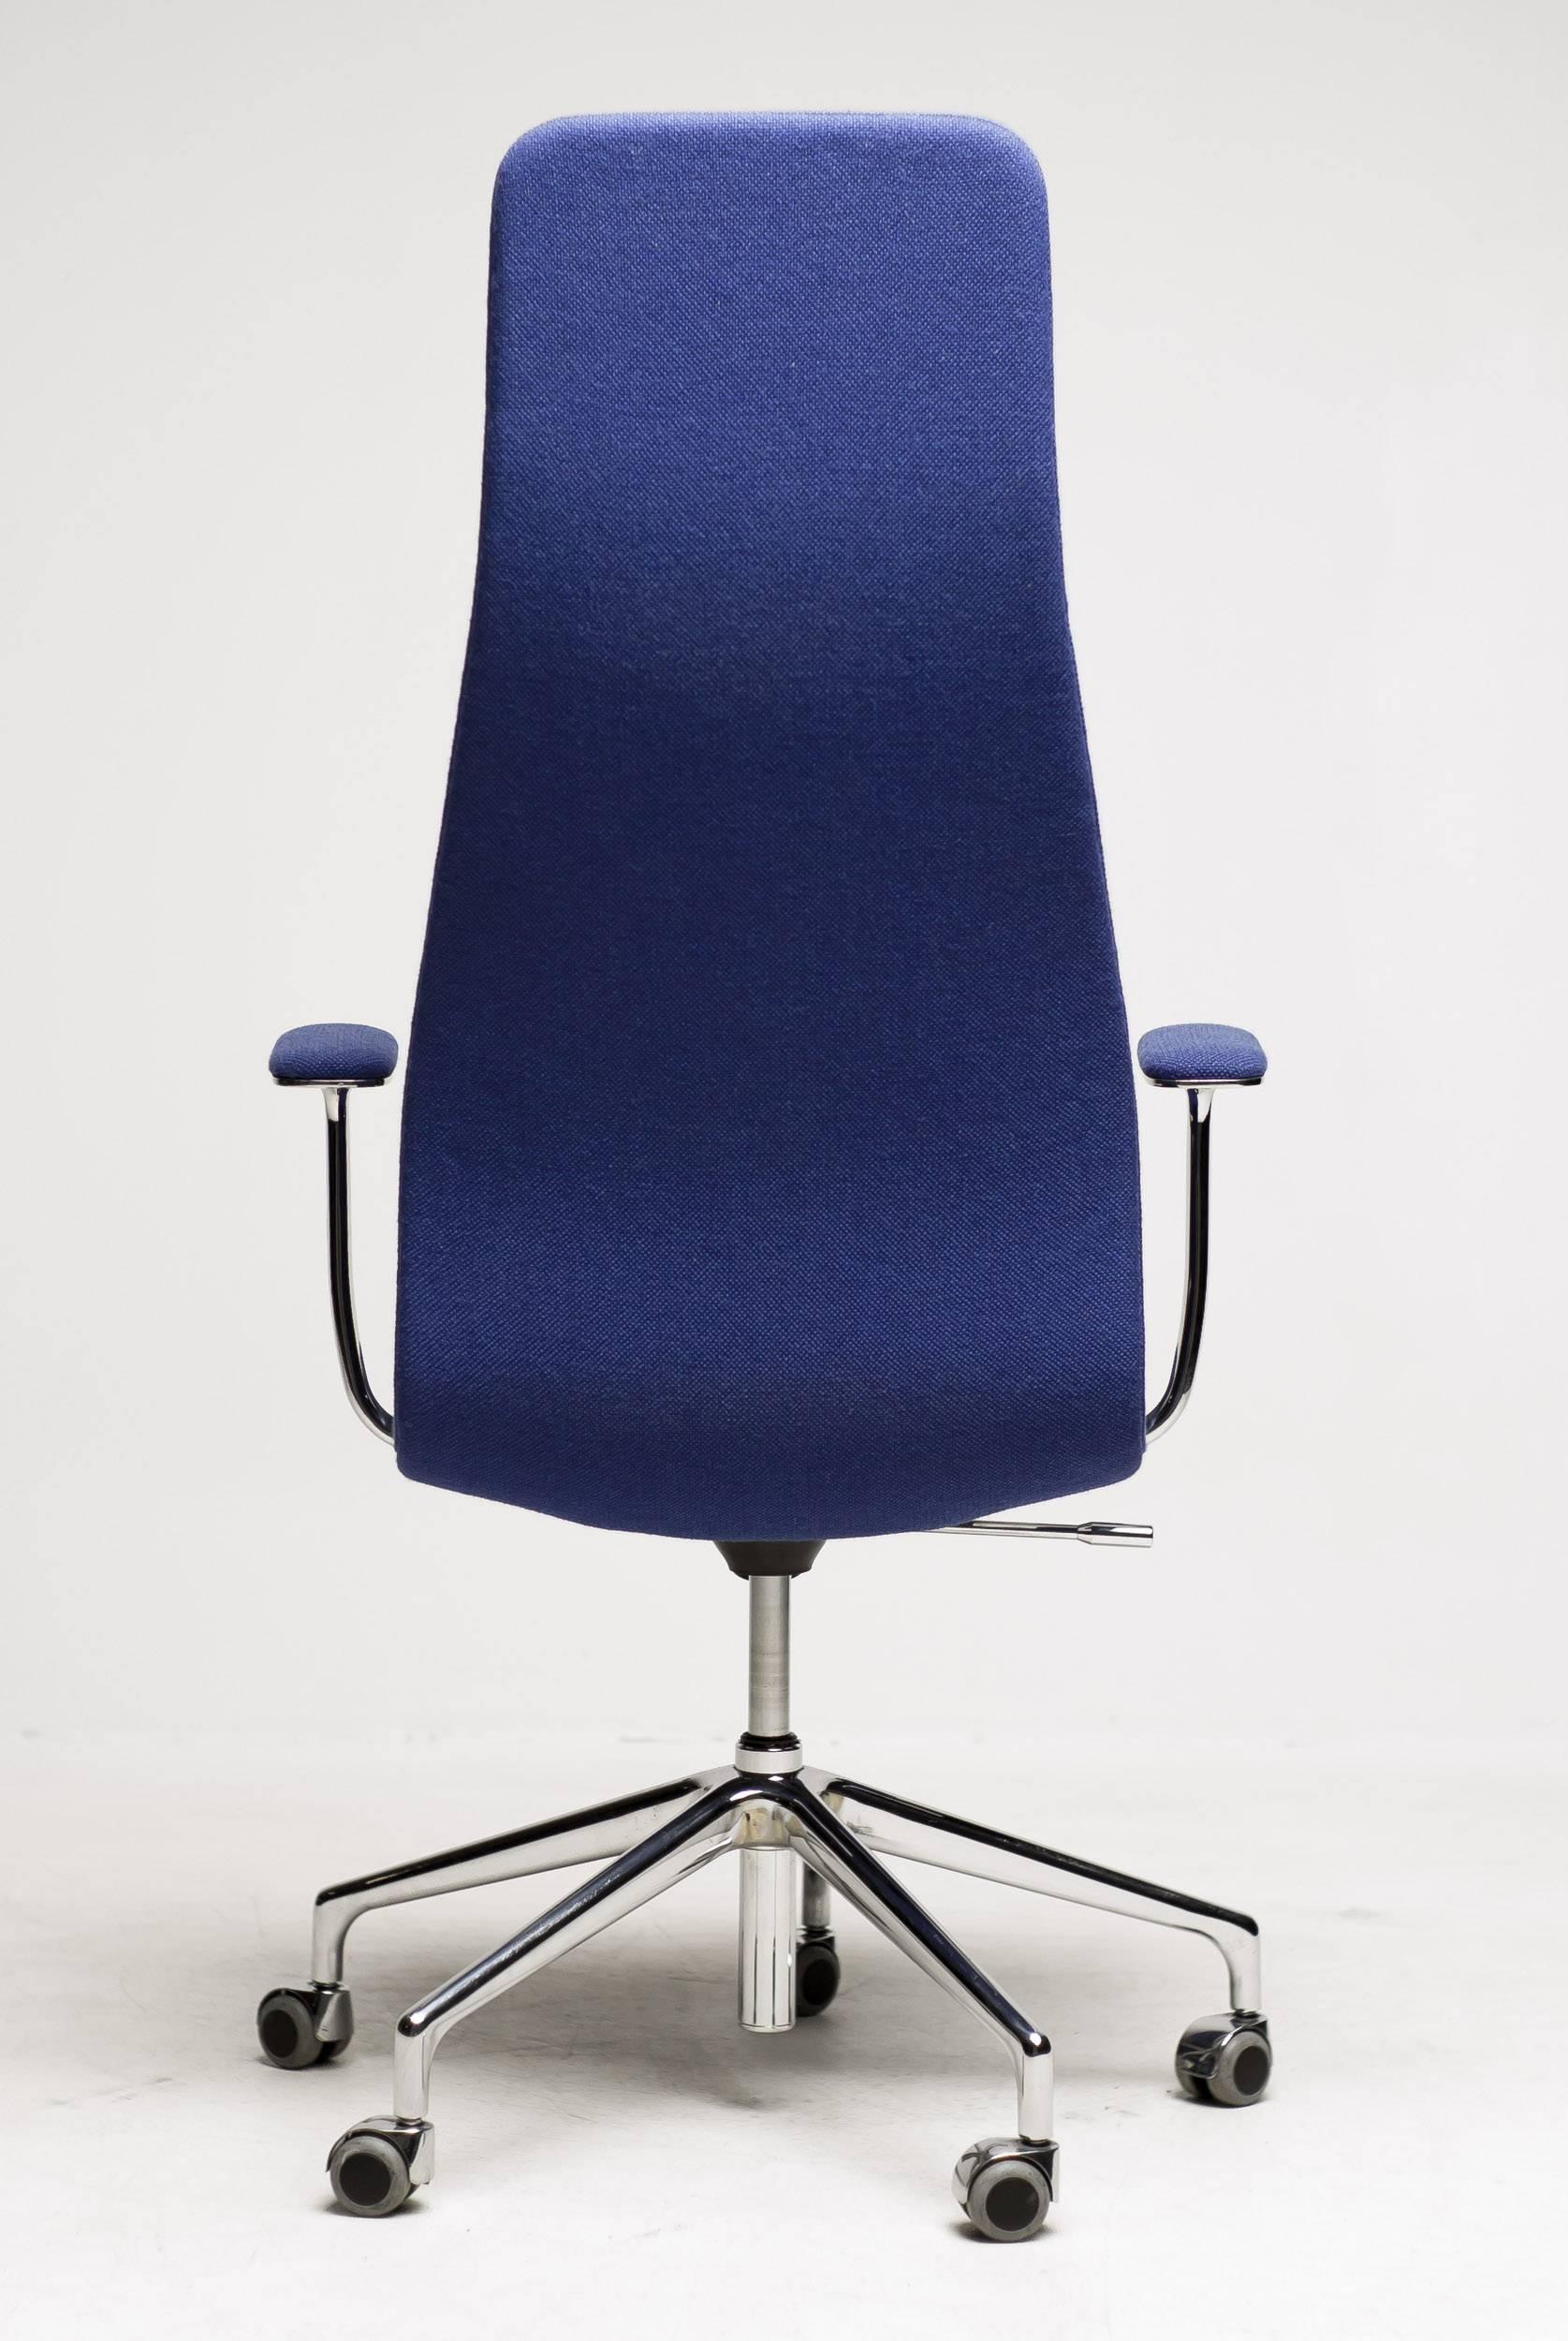 Italian High Back Lotus Office Chair Designed by Jasper Morrison